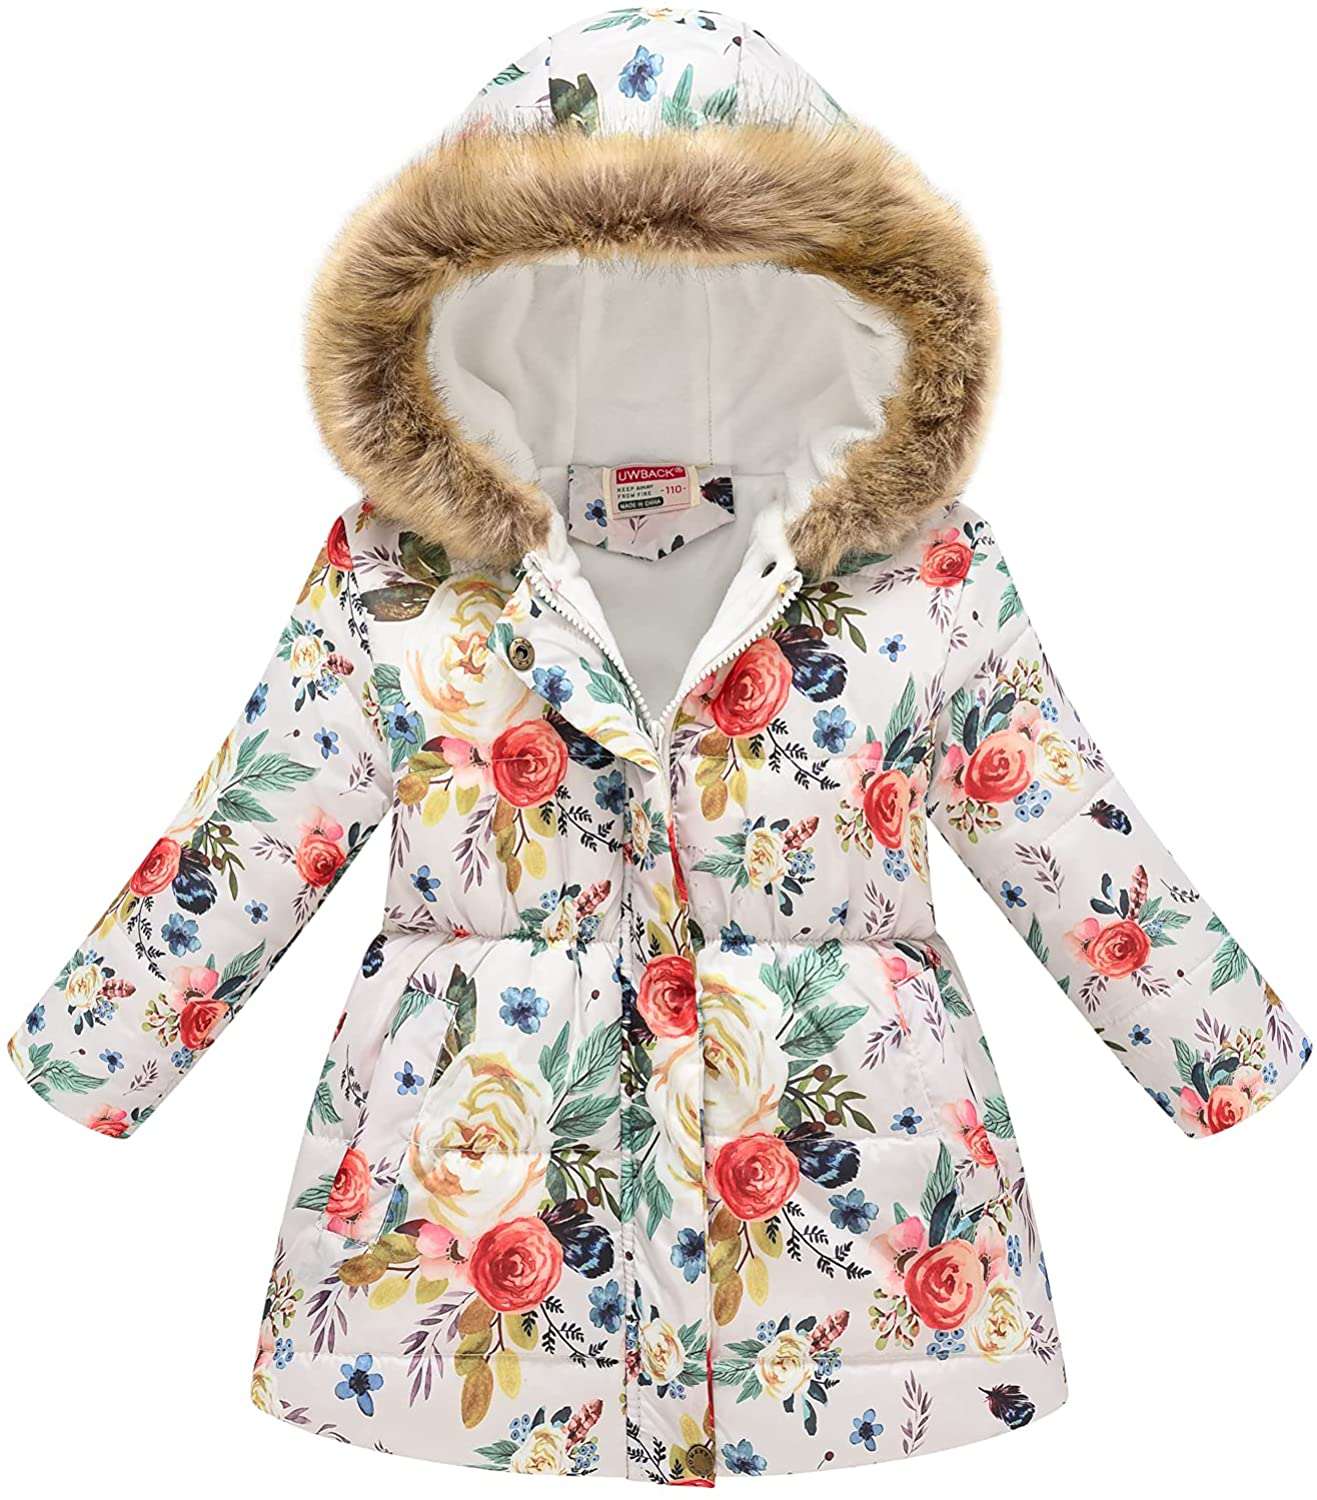 UWBACK Winter Coat for Girls Hooded Floral Print Kids Warm Cotton Parka